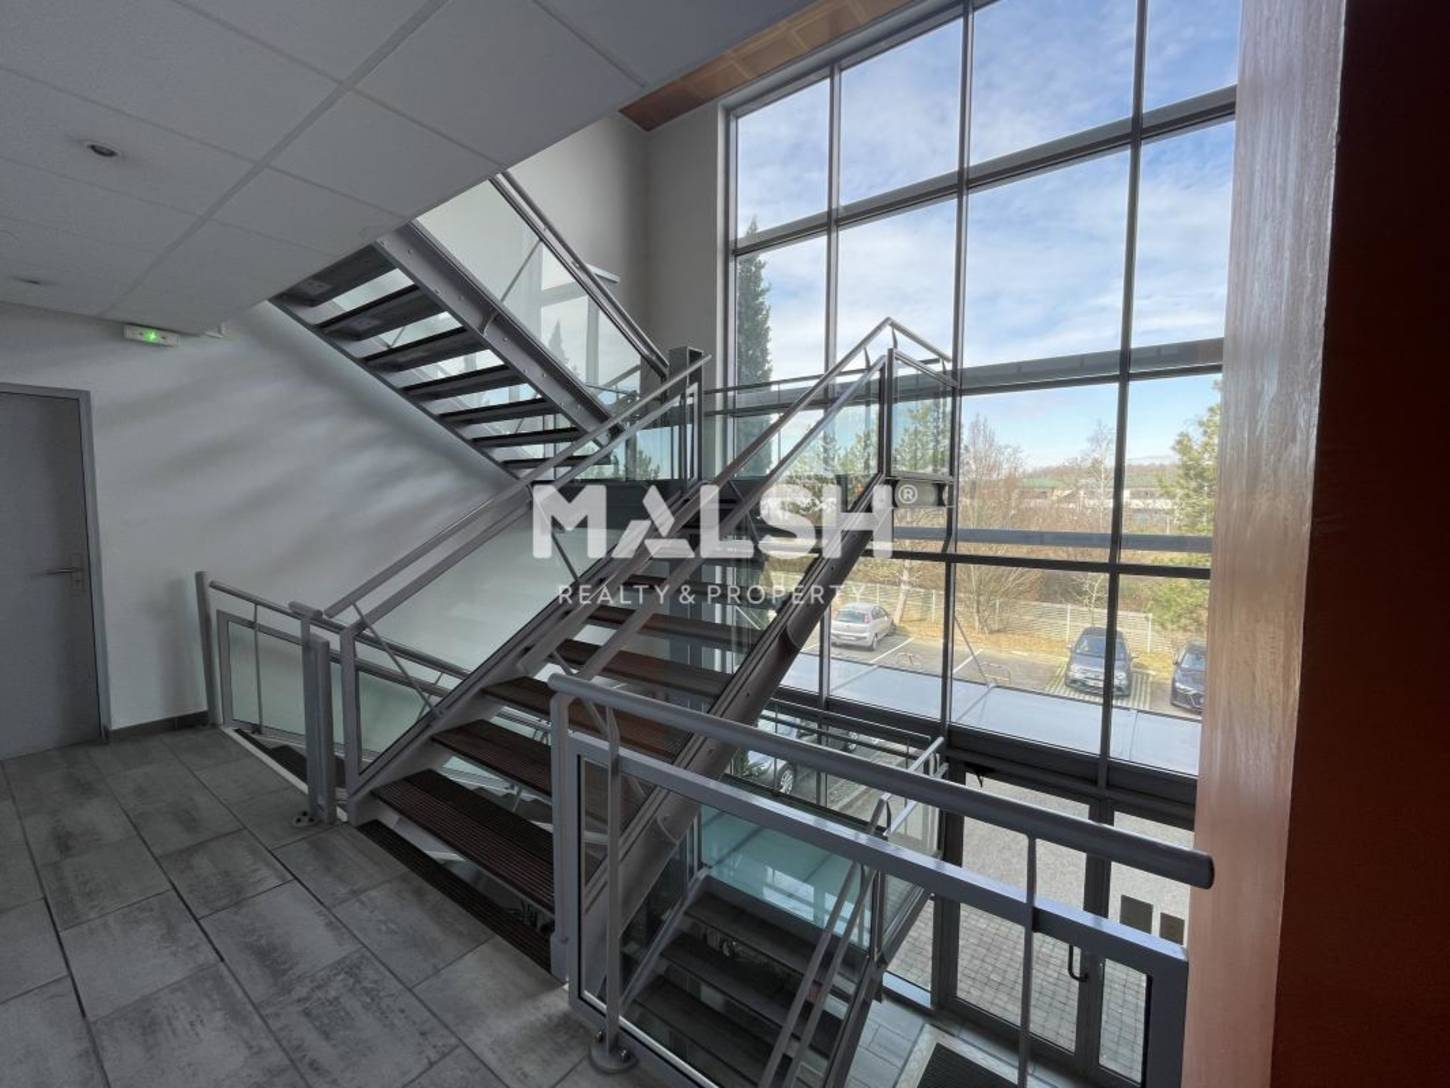 MALSH Realty & Property - Bureaux - Lyon Sud Ouest - Saint-Genis-Laval - 2